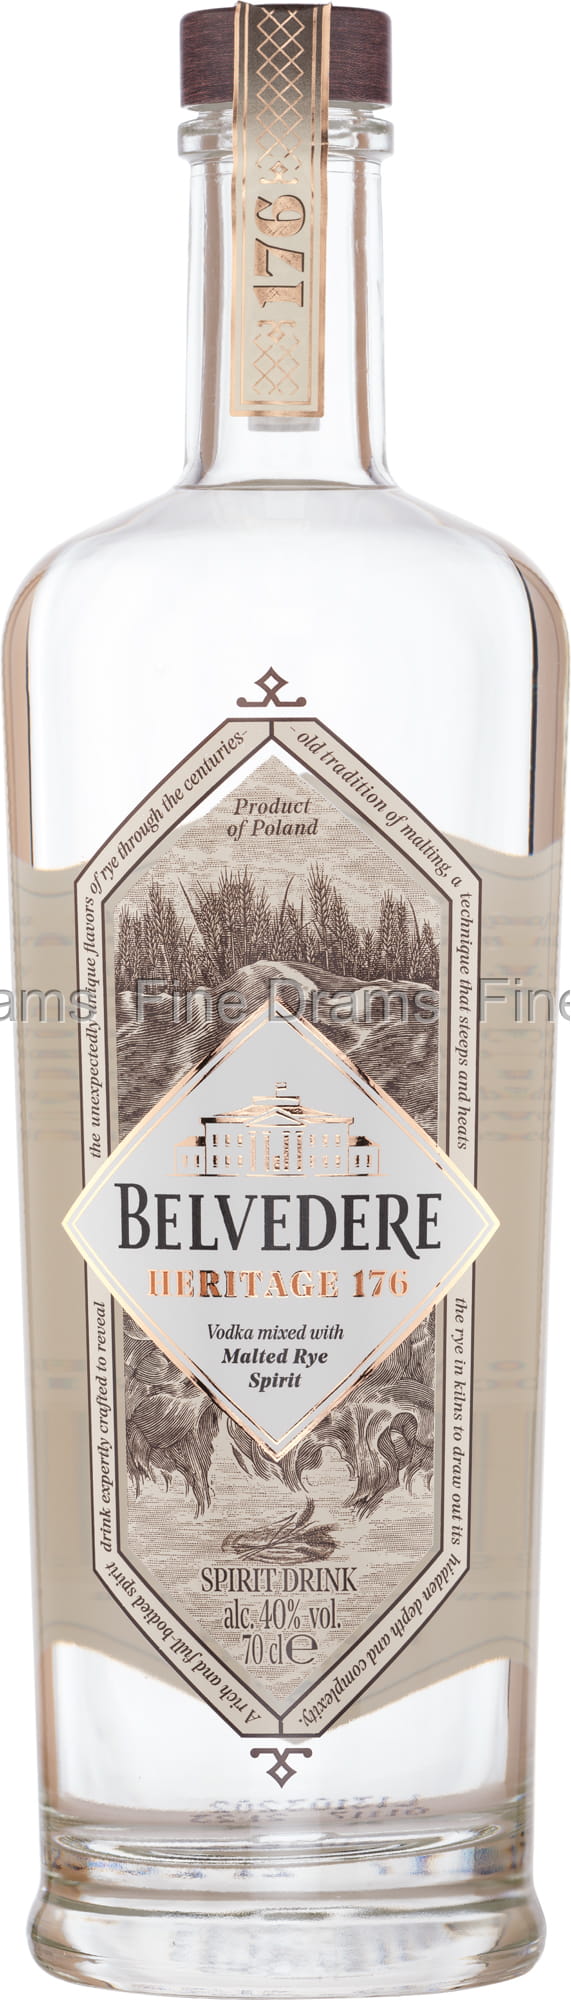 Vodka Belvedere 176 Heritage